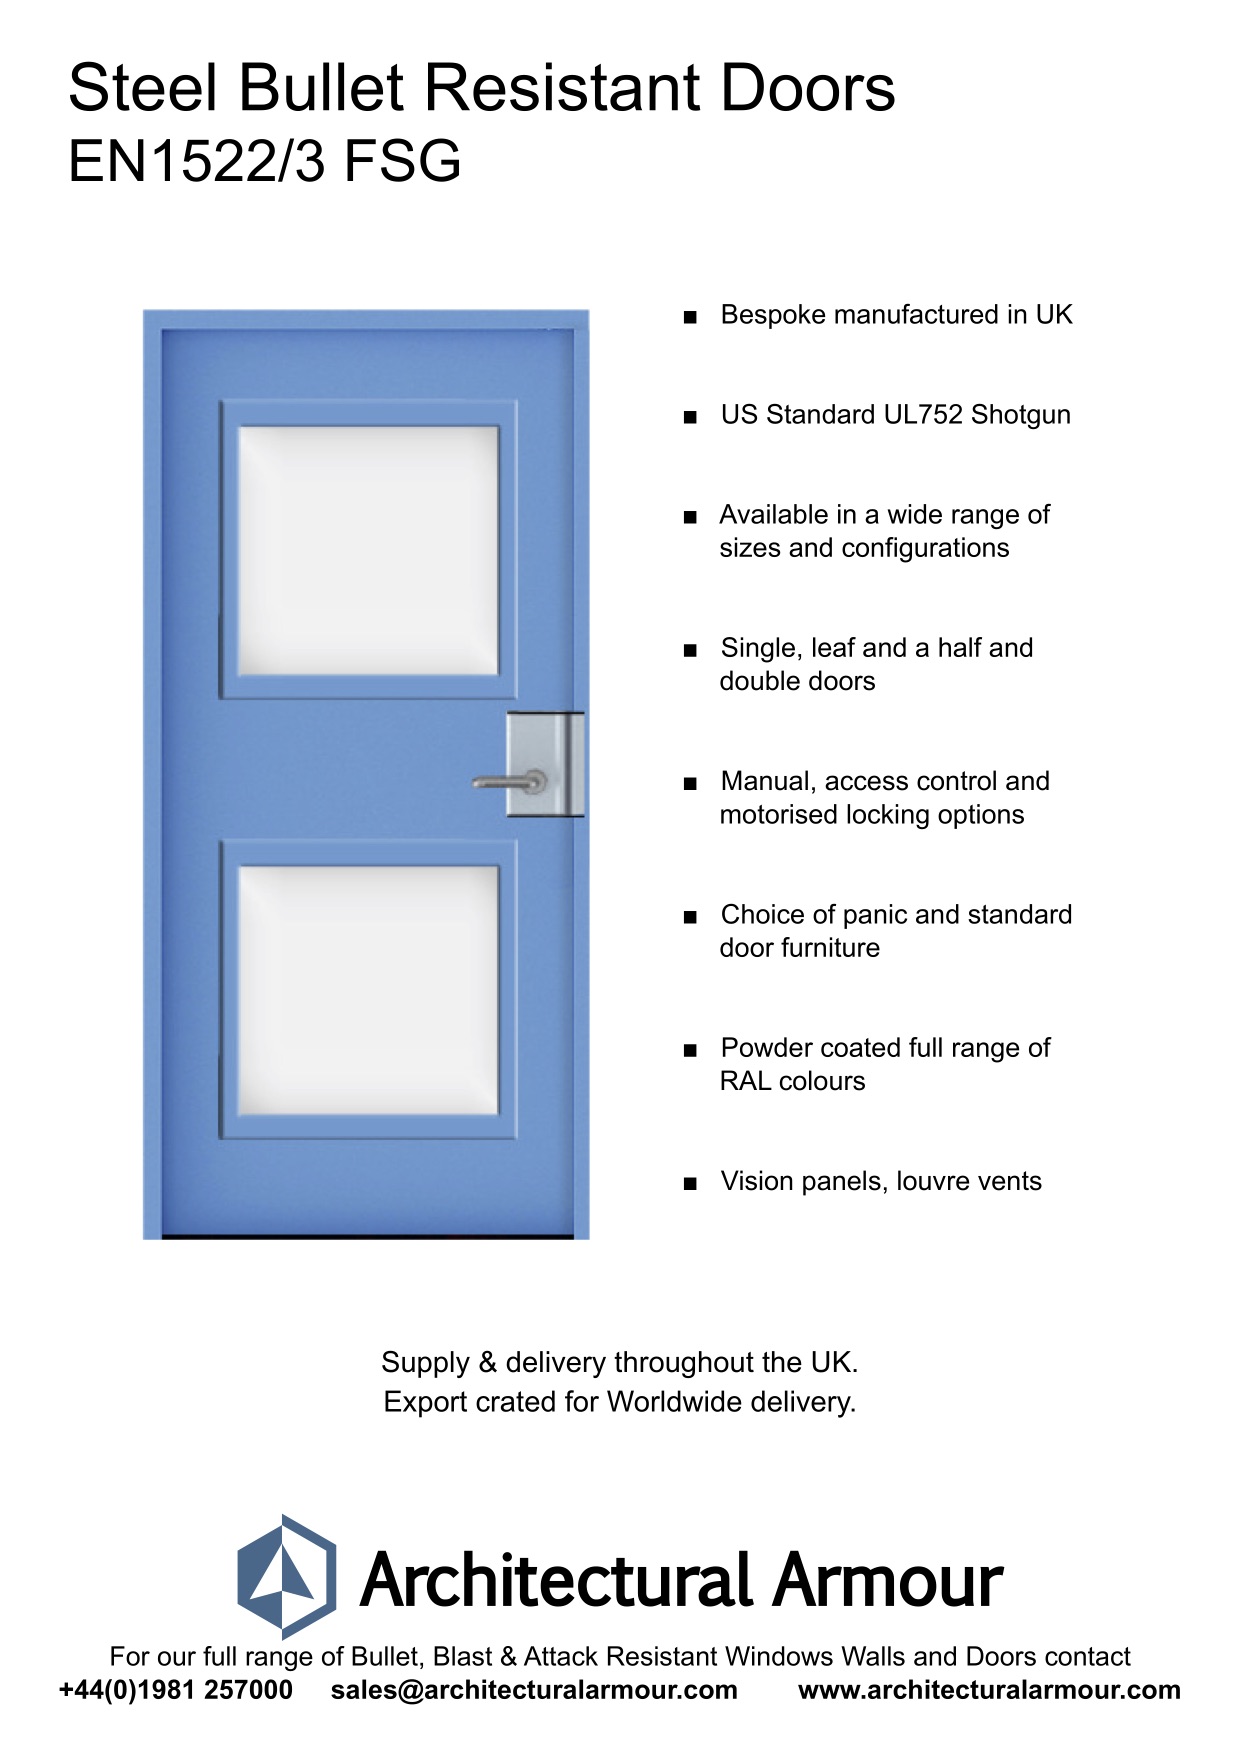 Bullet-proof-Steel-Door-Vision-Panels-EN1522-3-FSG